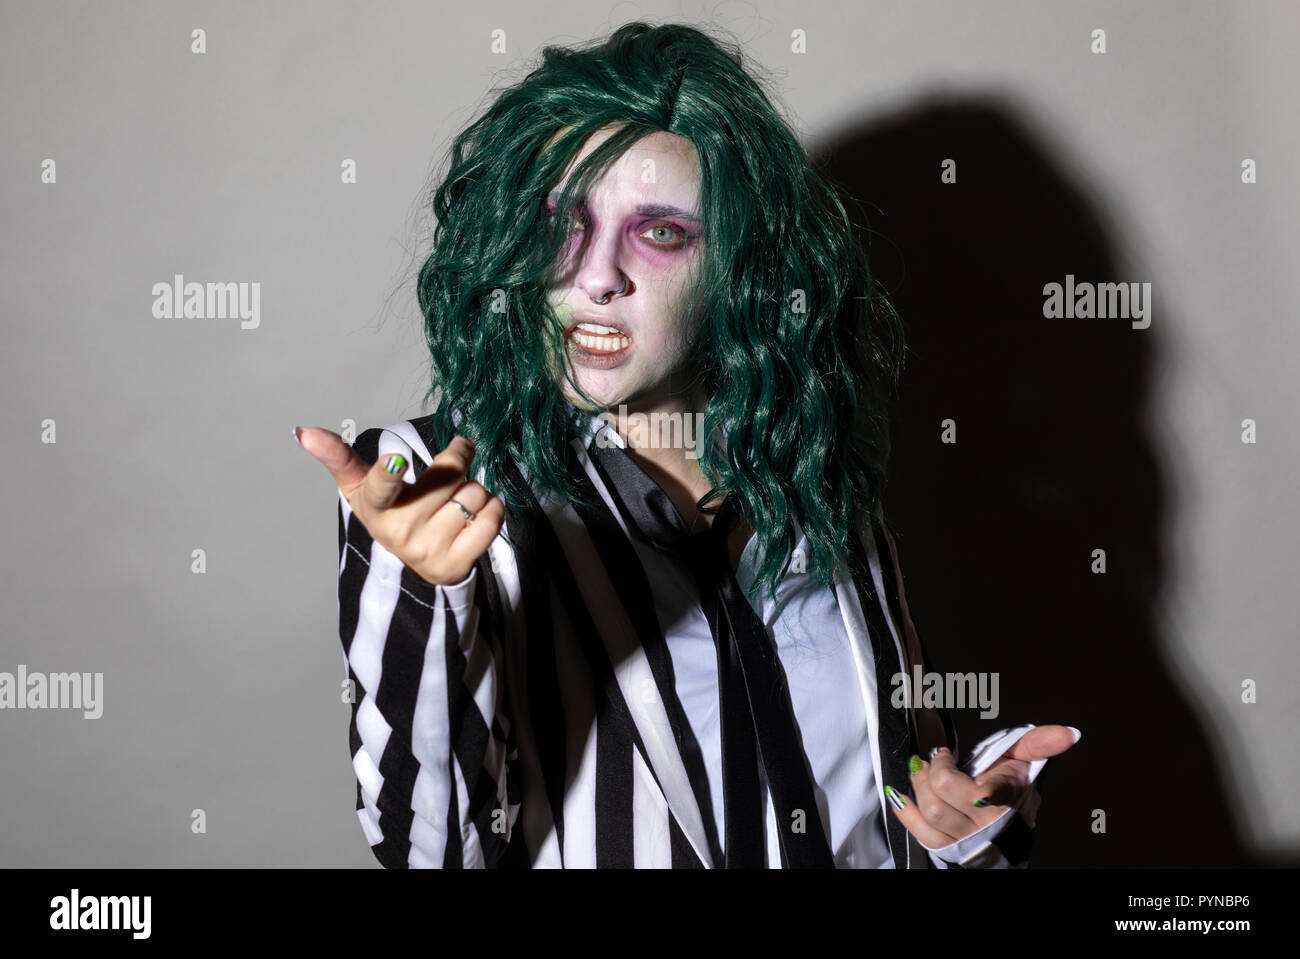 Une jeune femme s'habille pour l'Halloween dans un pinstripe costume et les cheveux verts. Banque D'Images